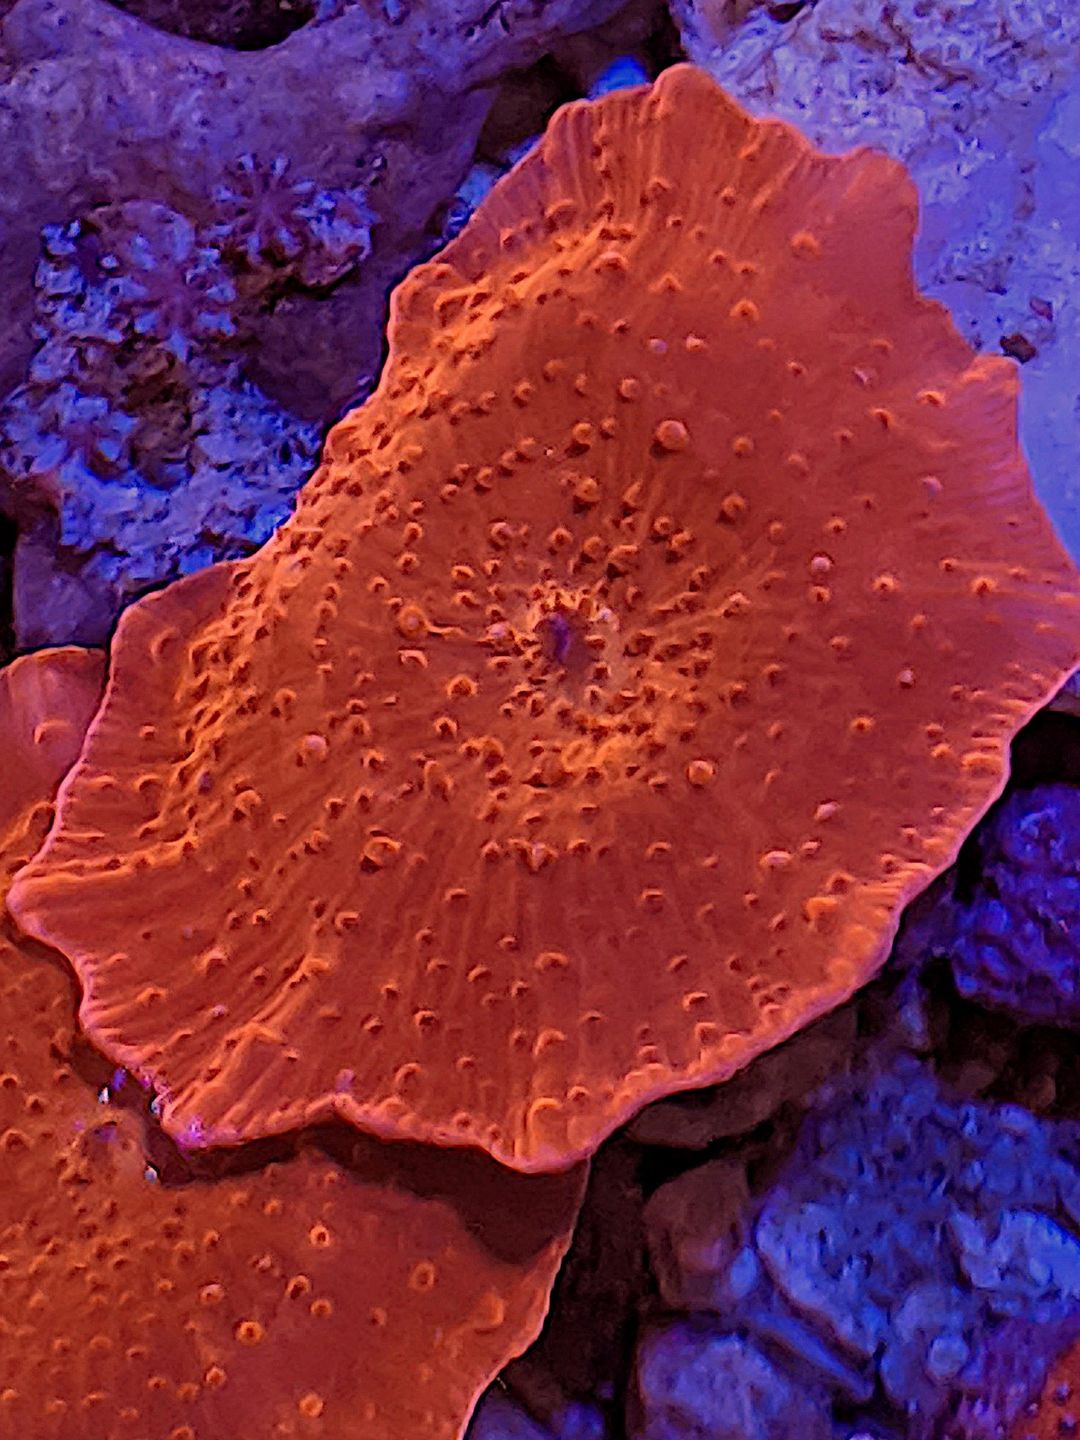 Mushroom ferrugata) - The Reef